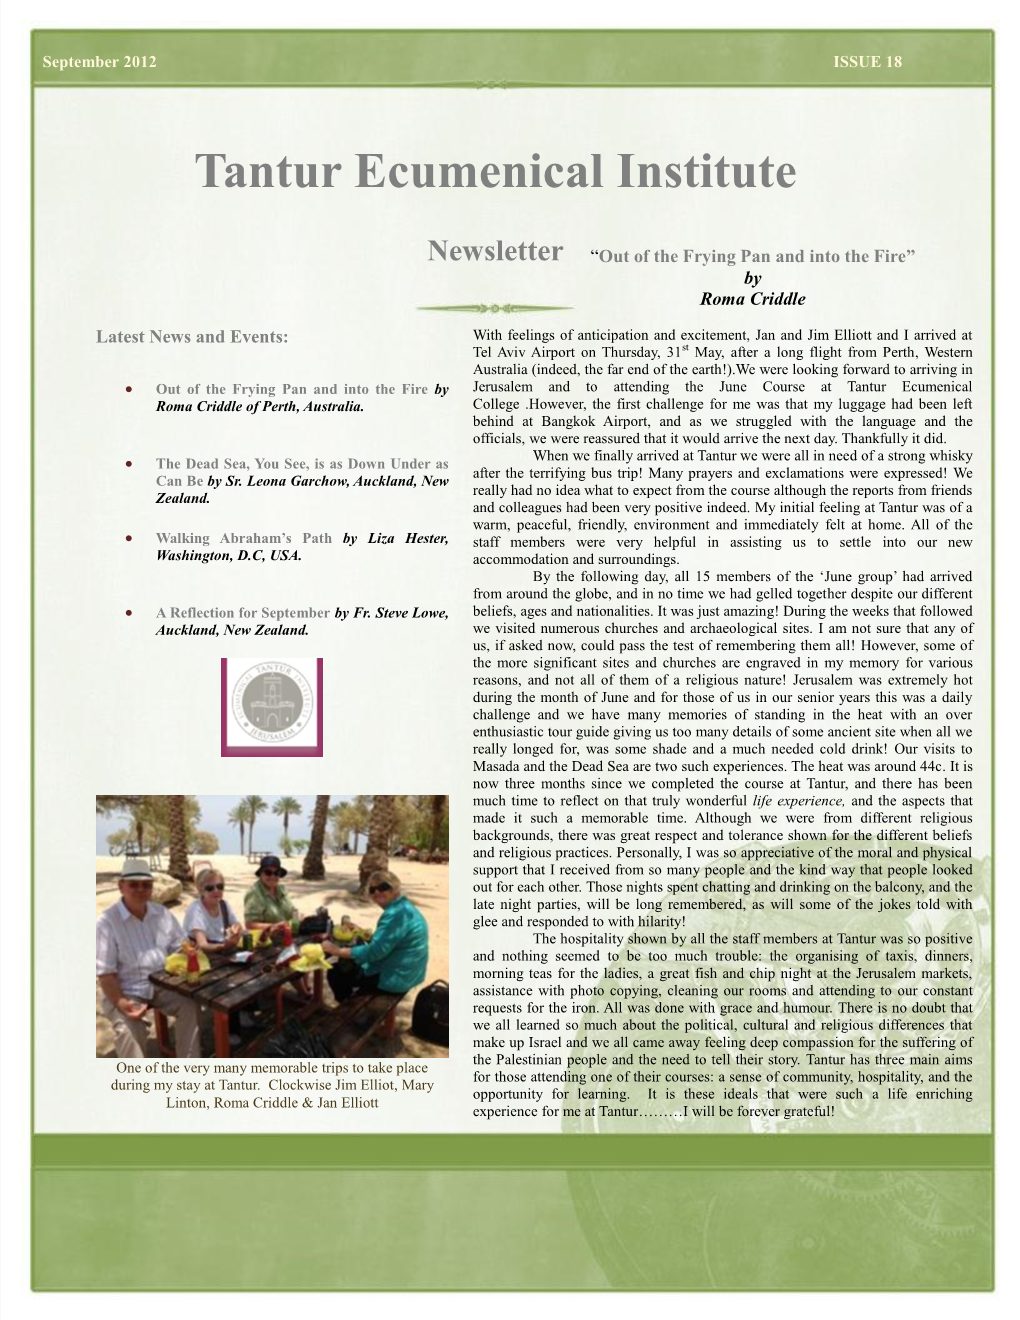 Tantur Ecumenical Institute Newsletter